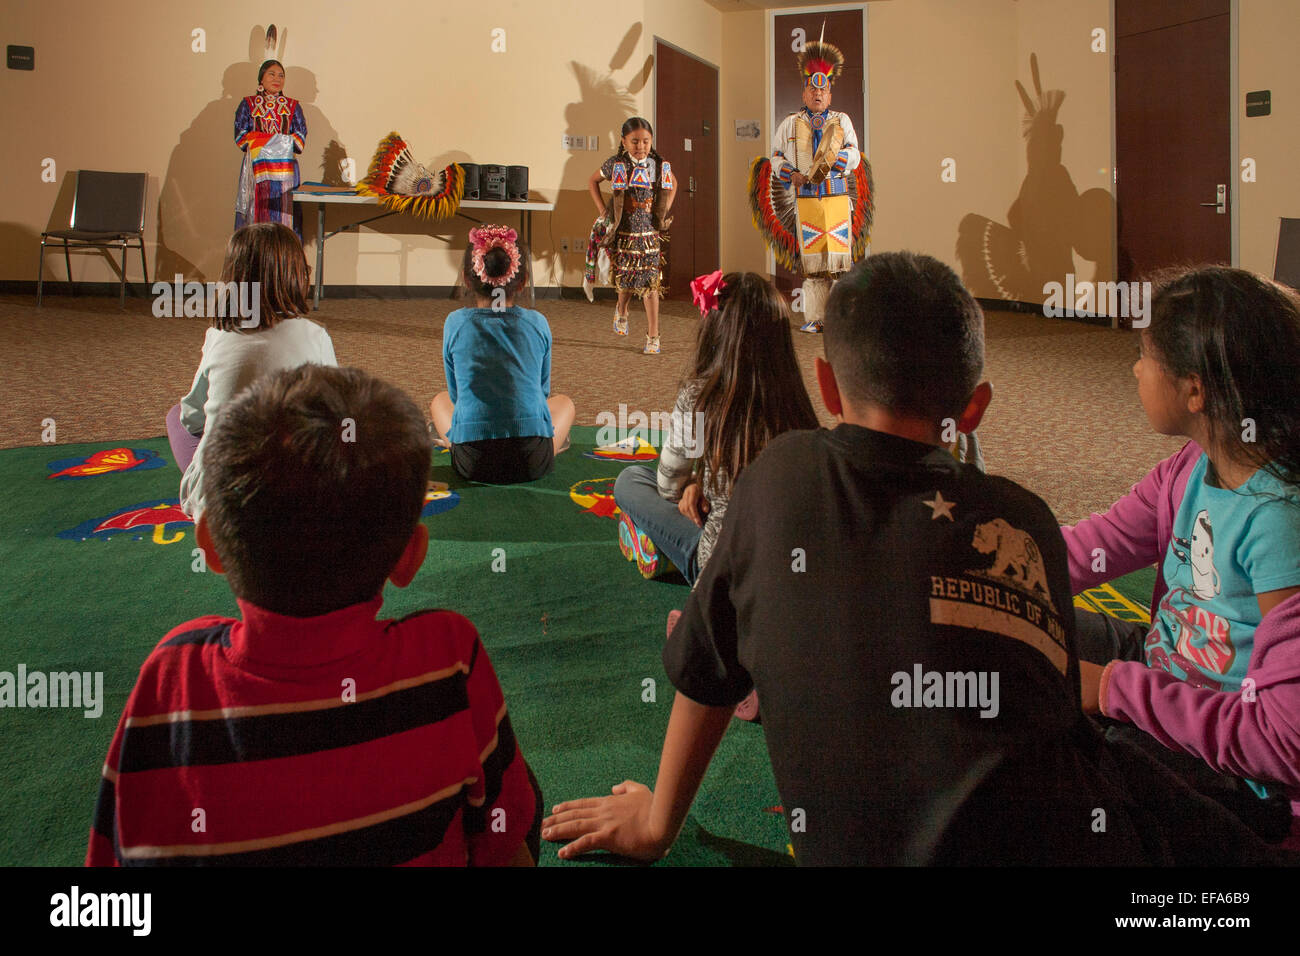 Wie Kinder im Publikum zu sehen, führt eine 7-Year-Old Navajo indische Tänzerin in vollen tribal Kostüm Jingle Dress Dance an einem Abend der Kultur der amerikanischen Ureinwohner in der Laguna Niguel, CA, Stadtbibliothek. Hinweis: kostümierte Vater und Schwester. Stockfoto